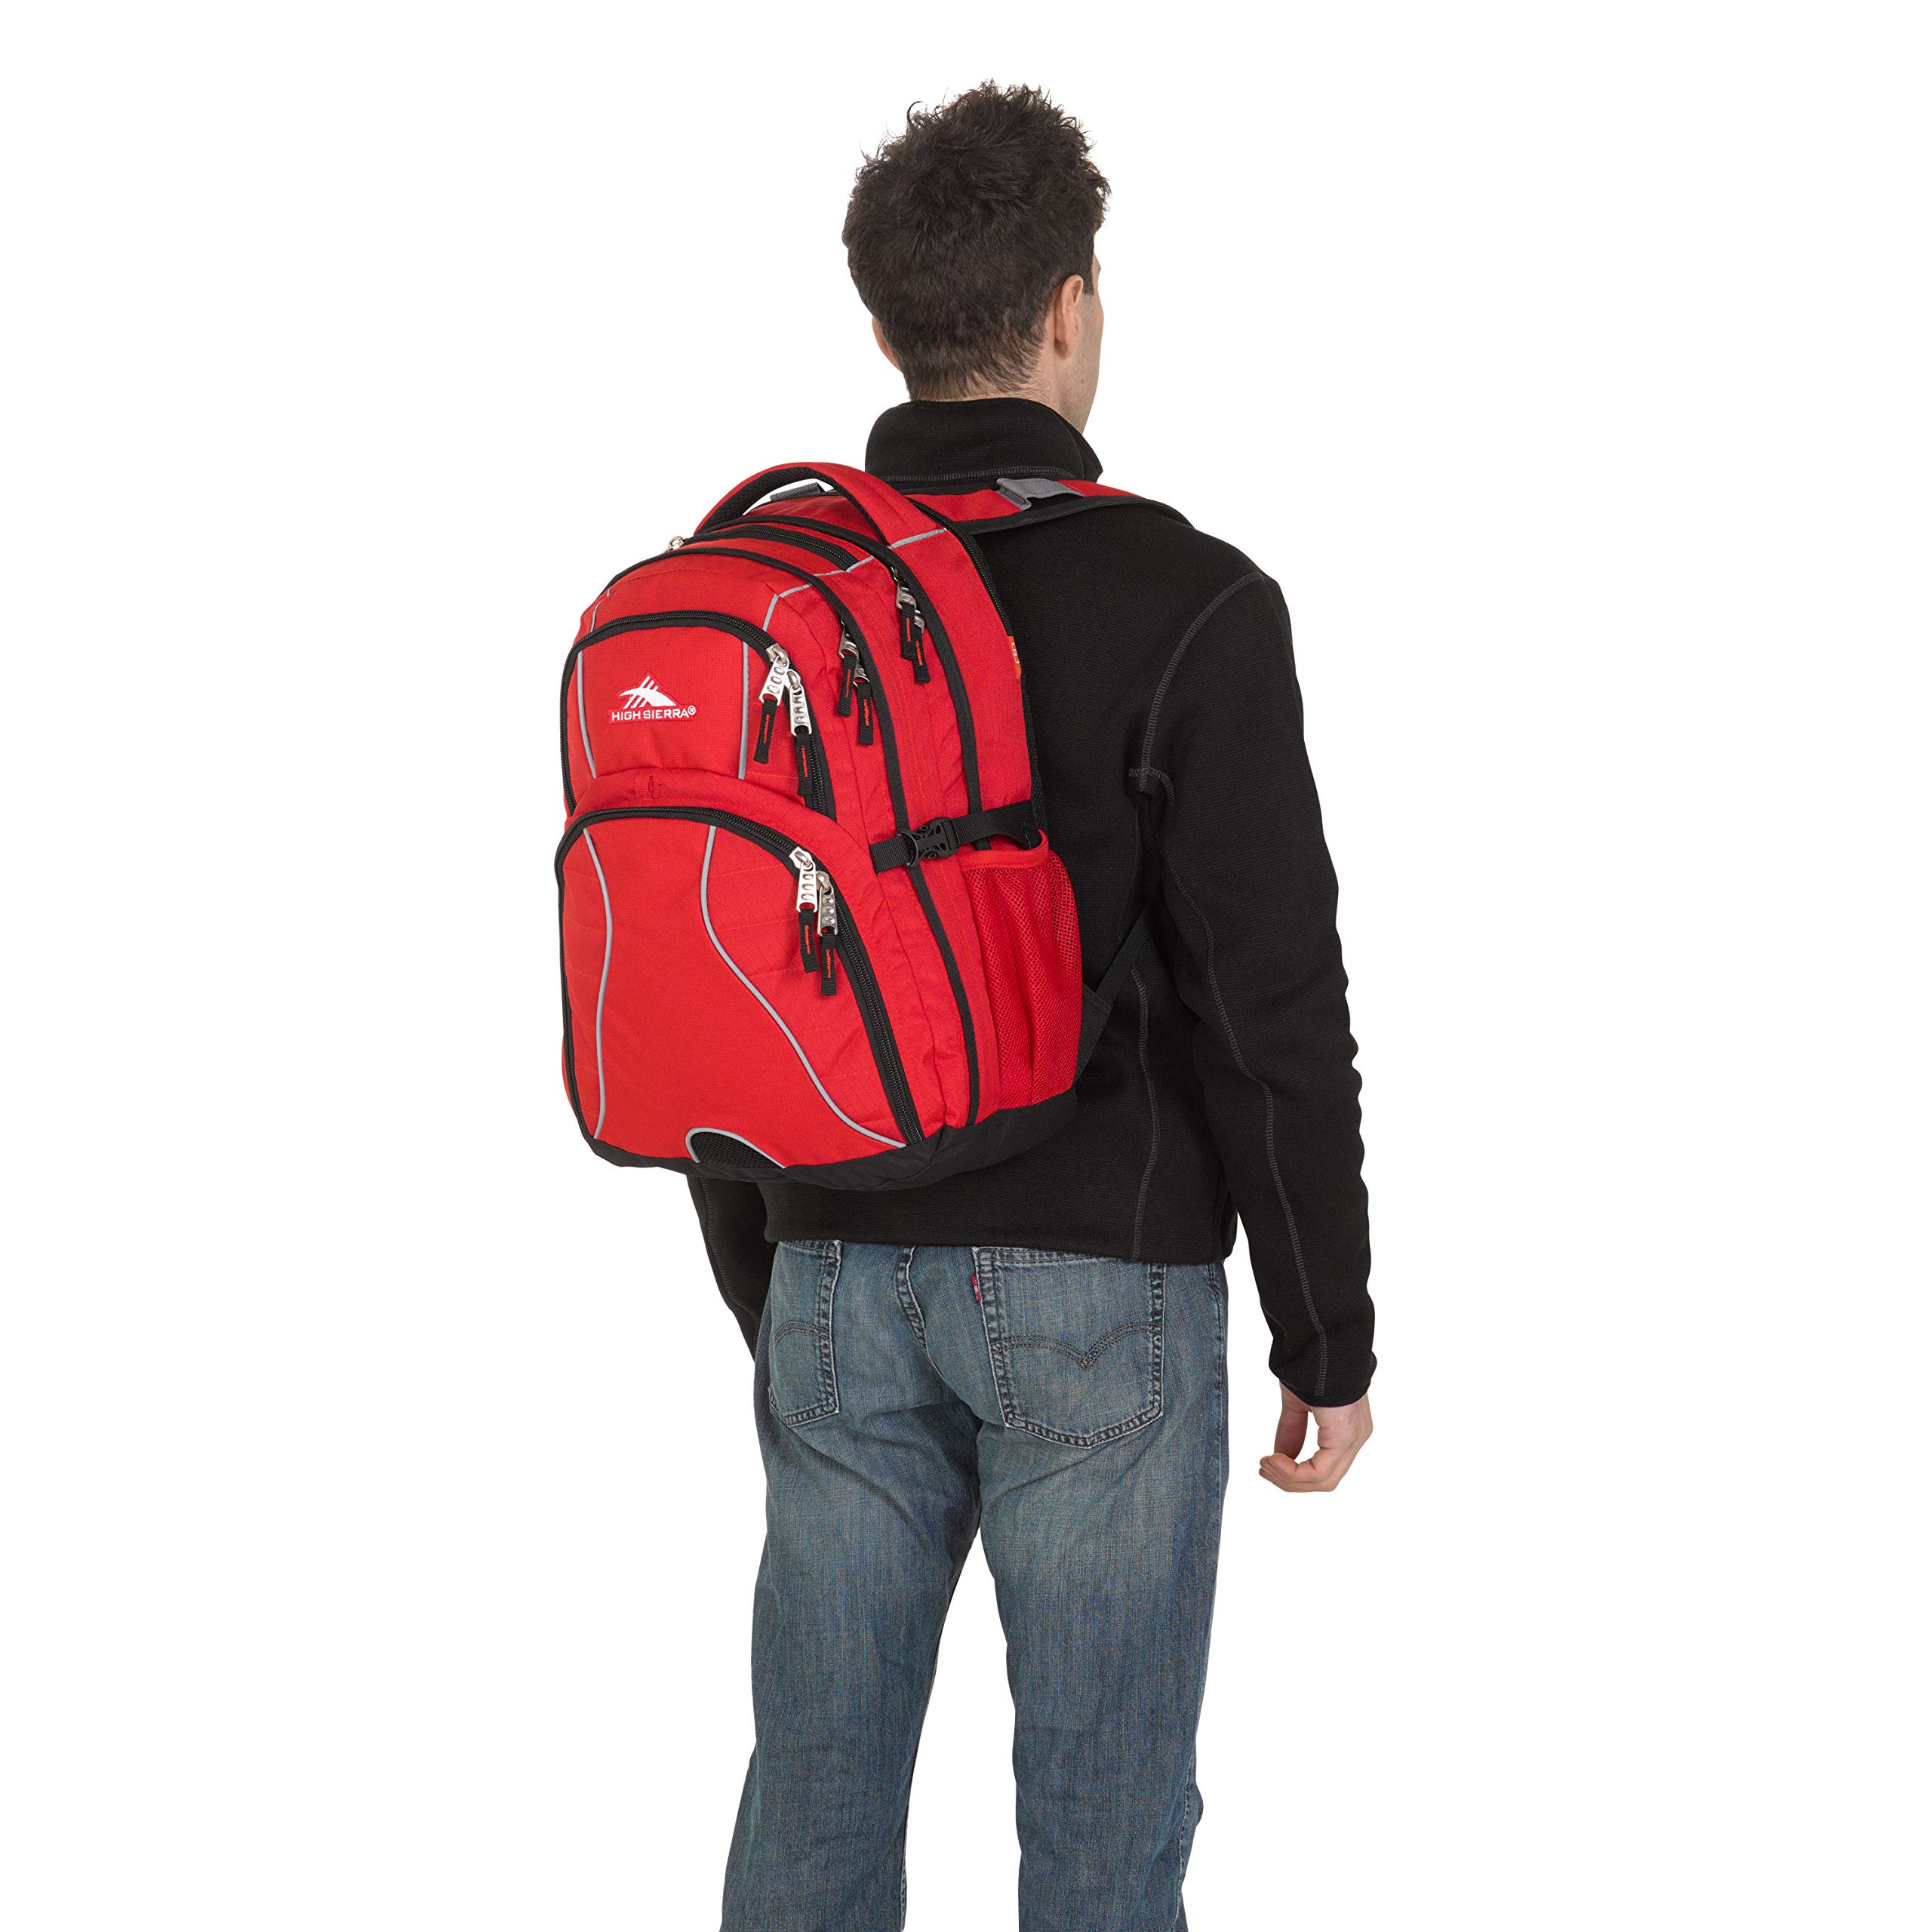 High Sierra Swerve Laptop Backpack, Crimson/Black, One Size